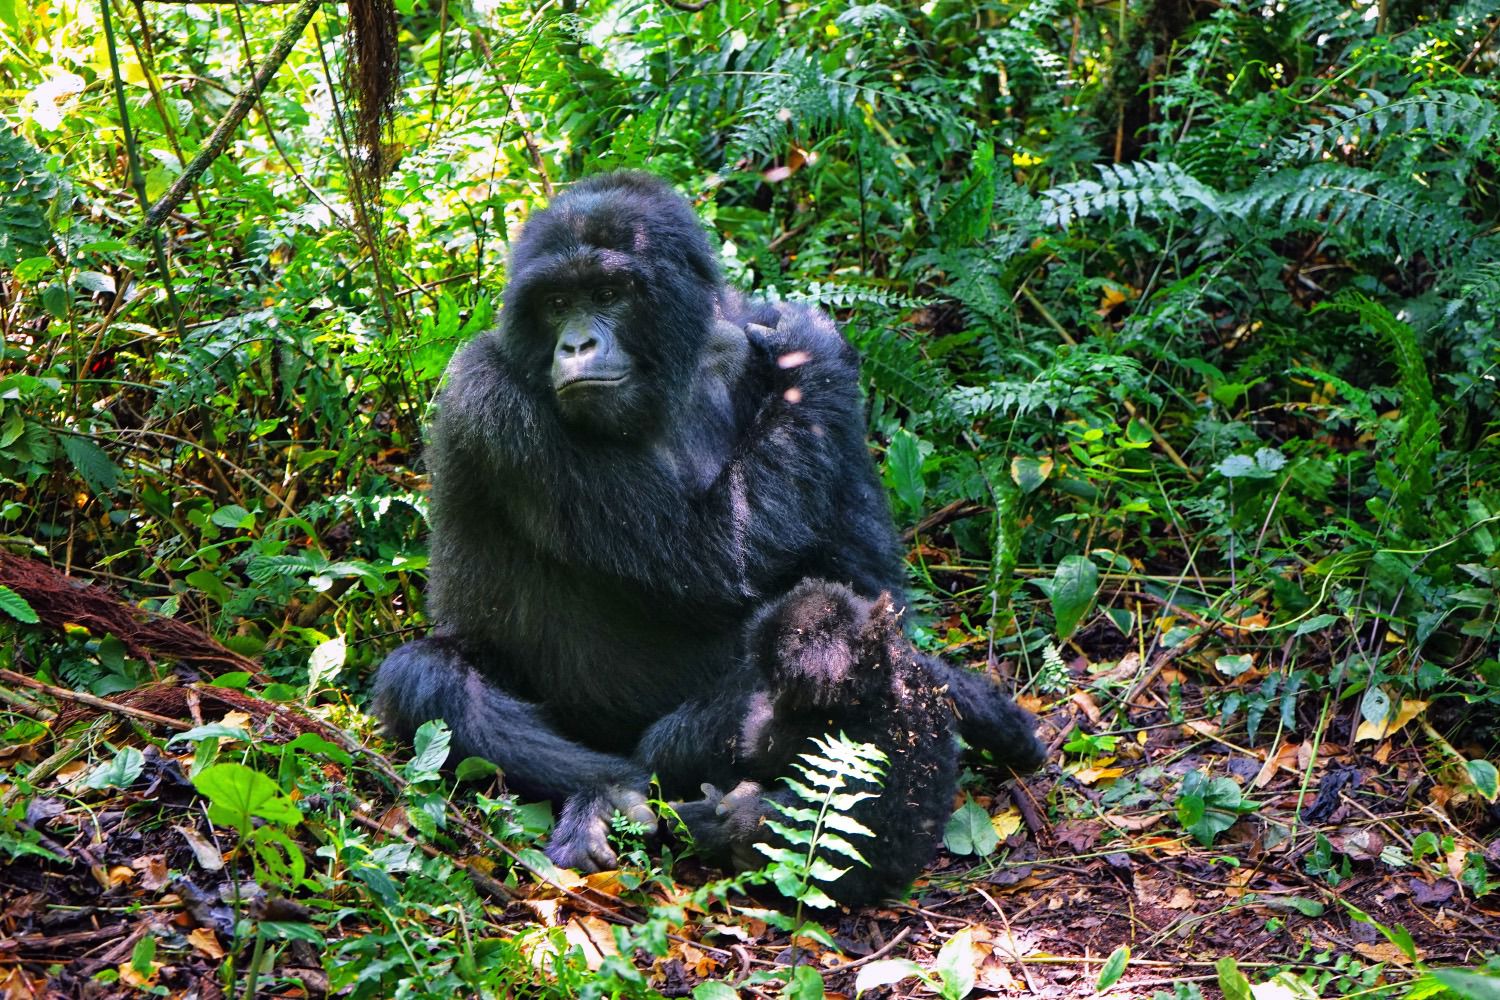 Gorilla trekking Uganda from Kigali